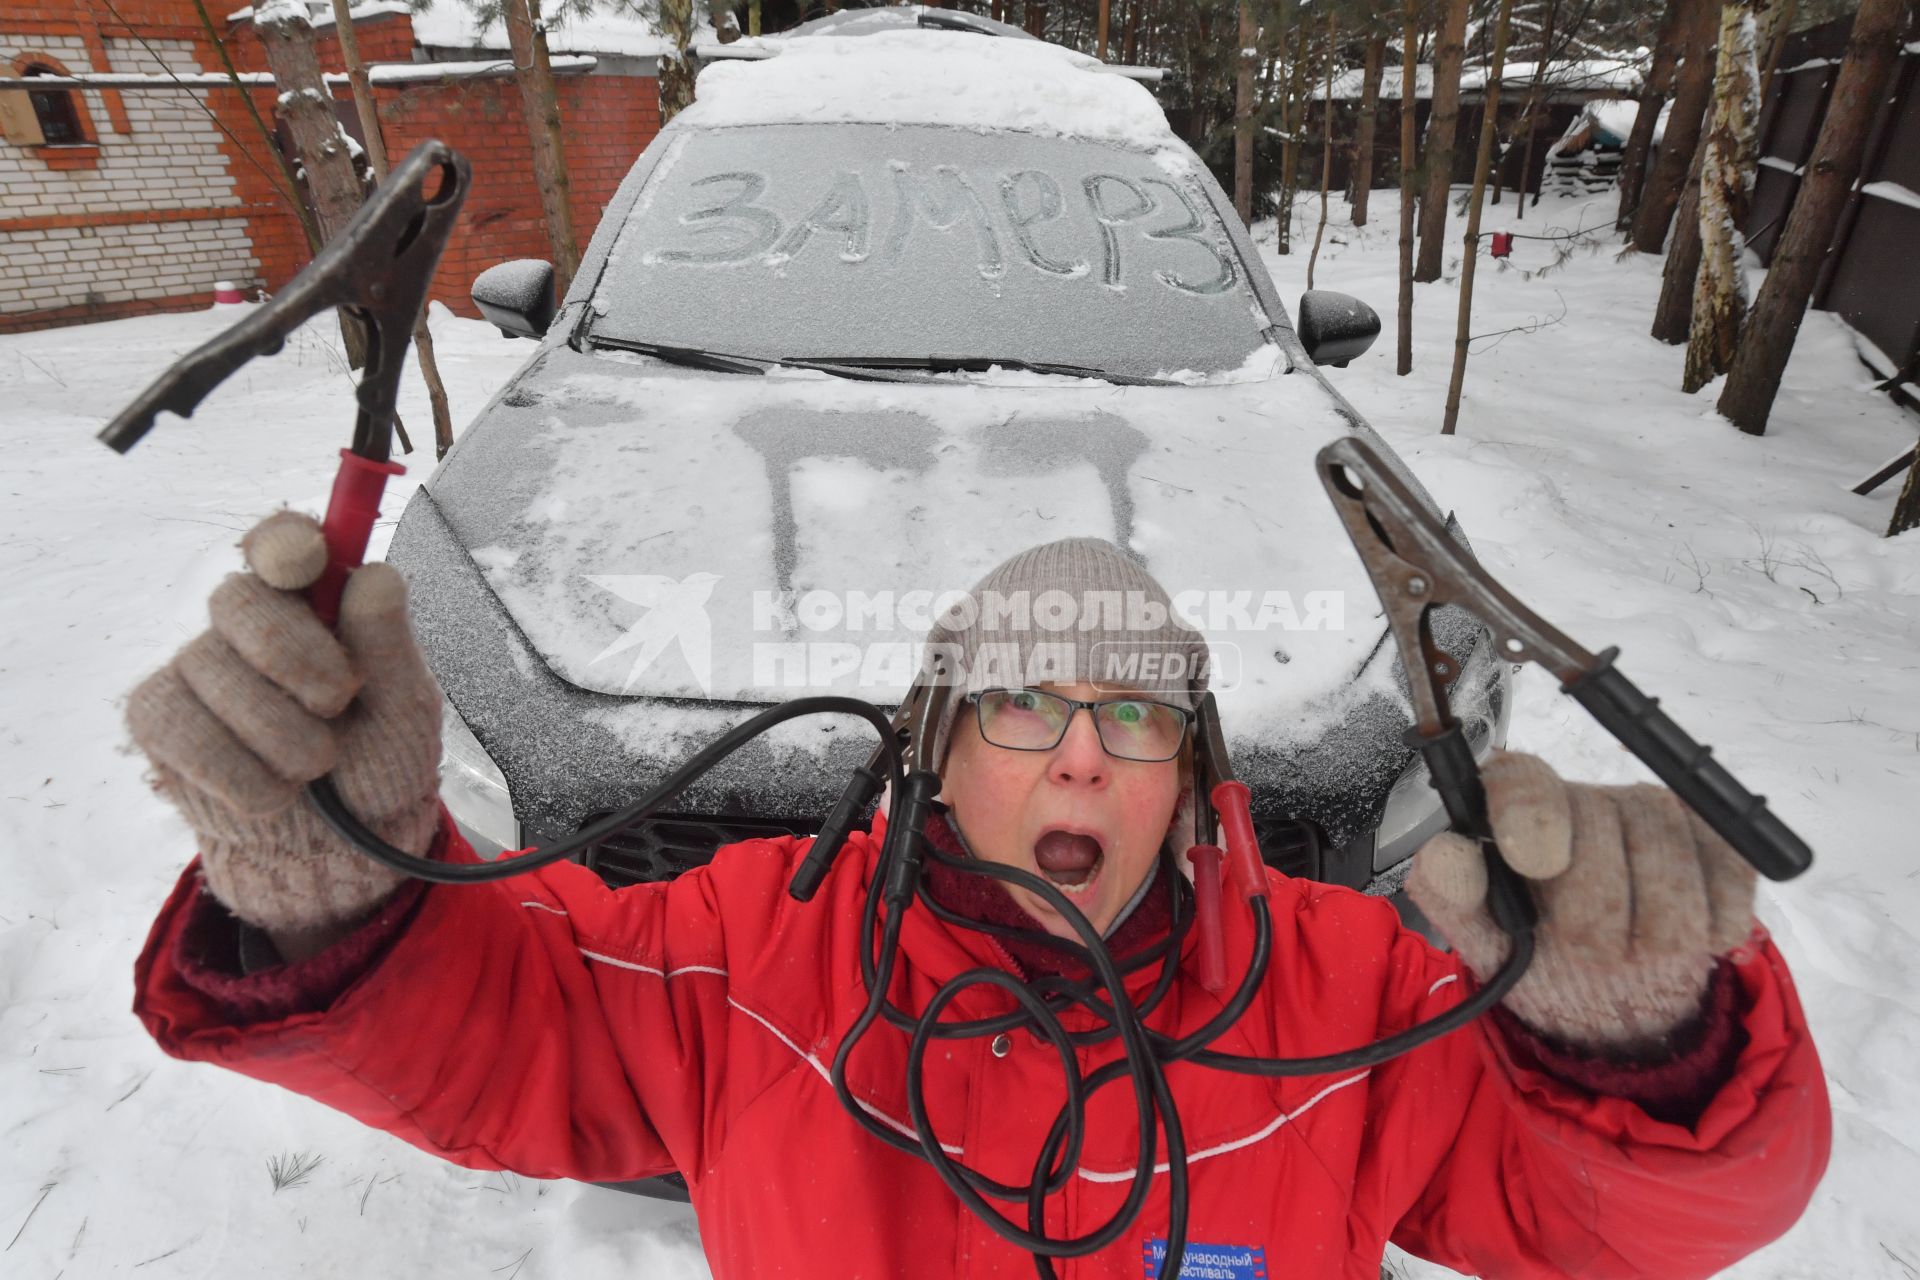 Женщина заводит автомобиль в мороз